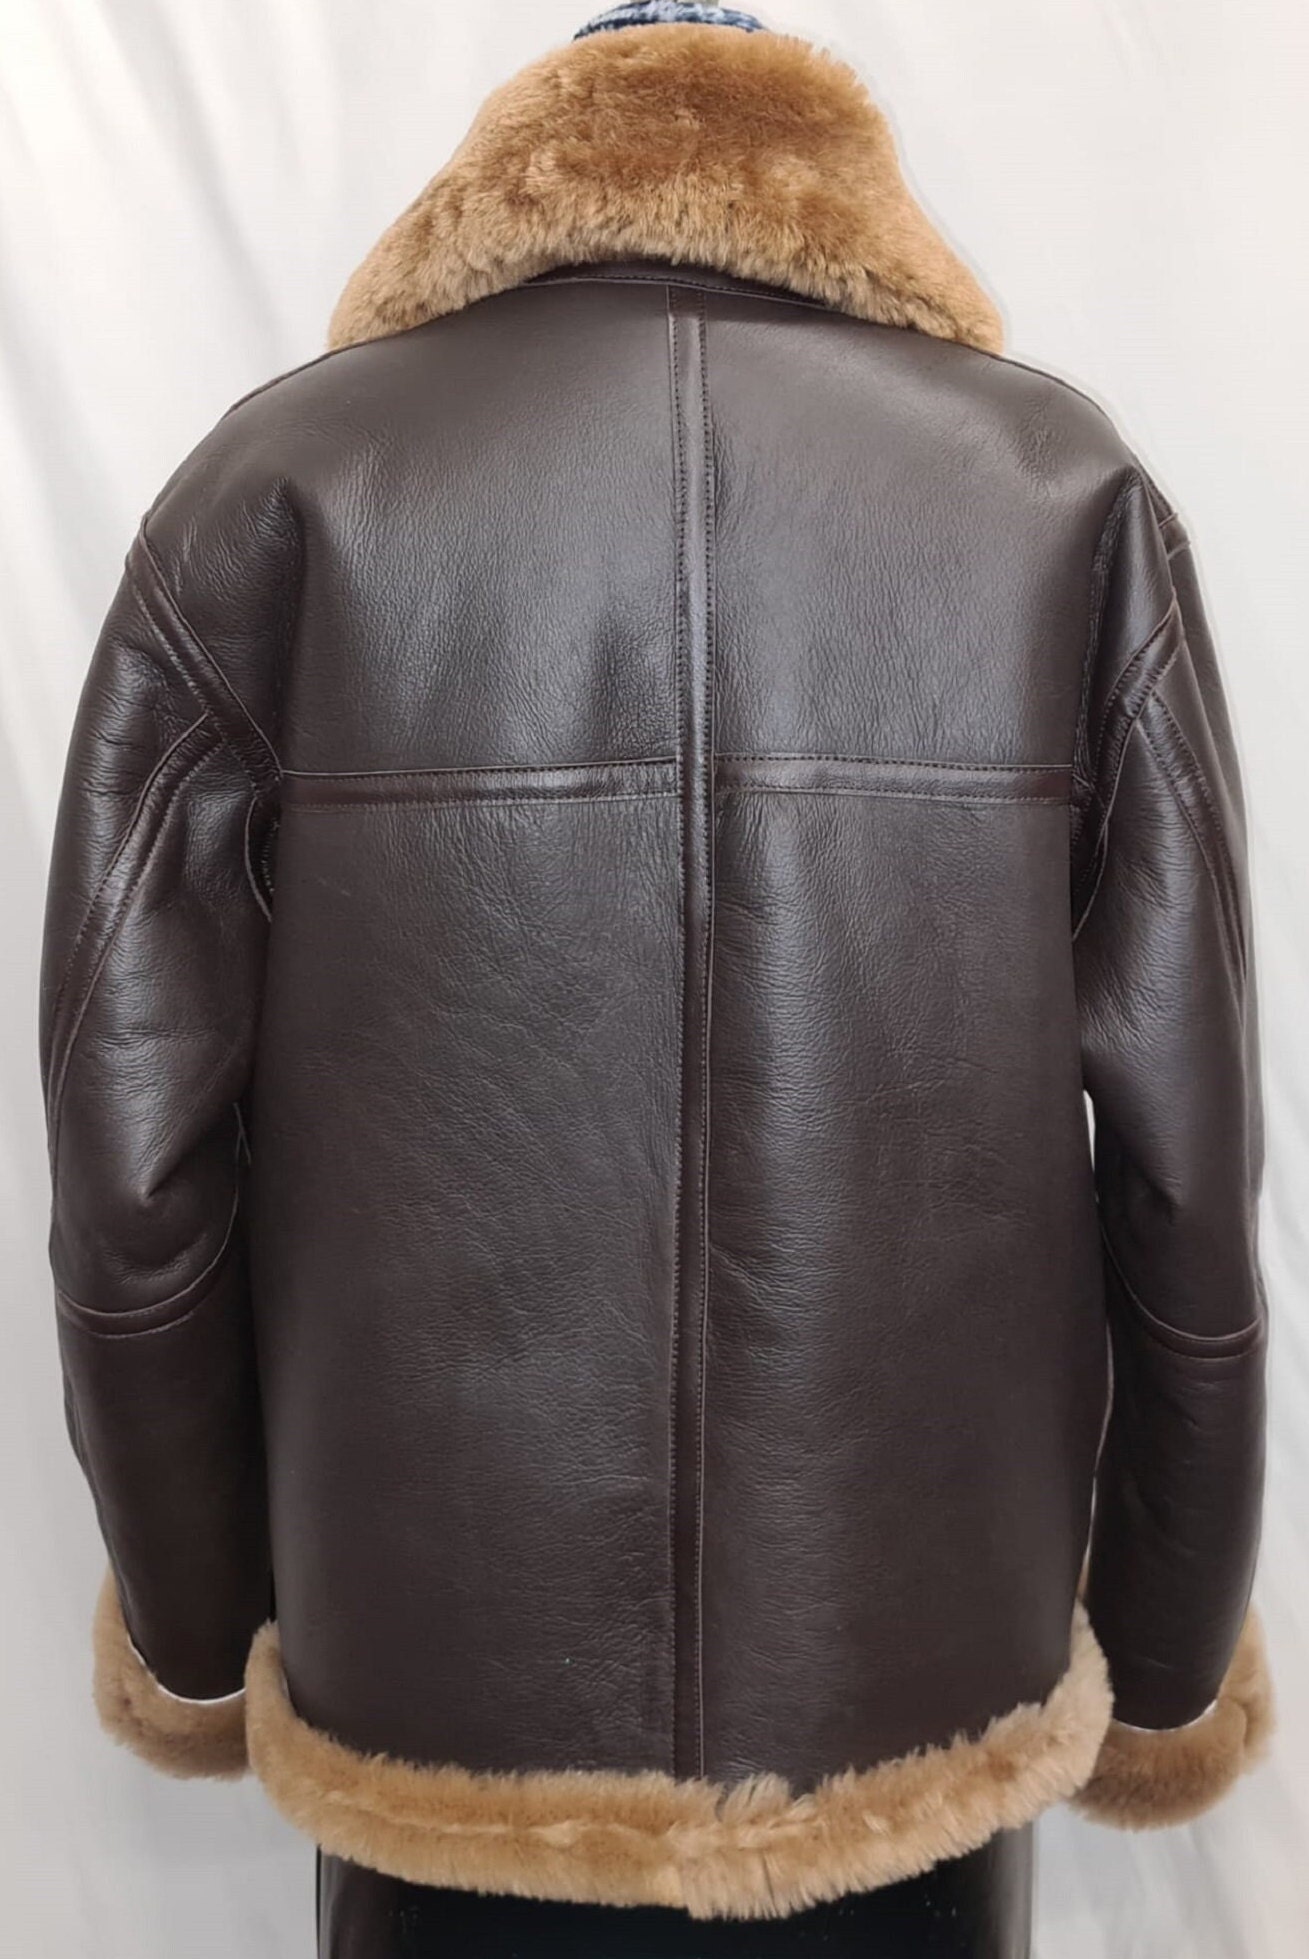 Authentic British Handmade Sheepskin Leather Pilot Jacket - Etsy